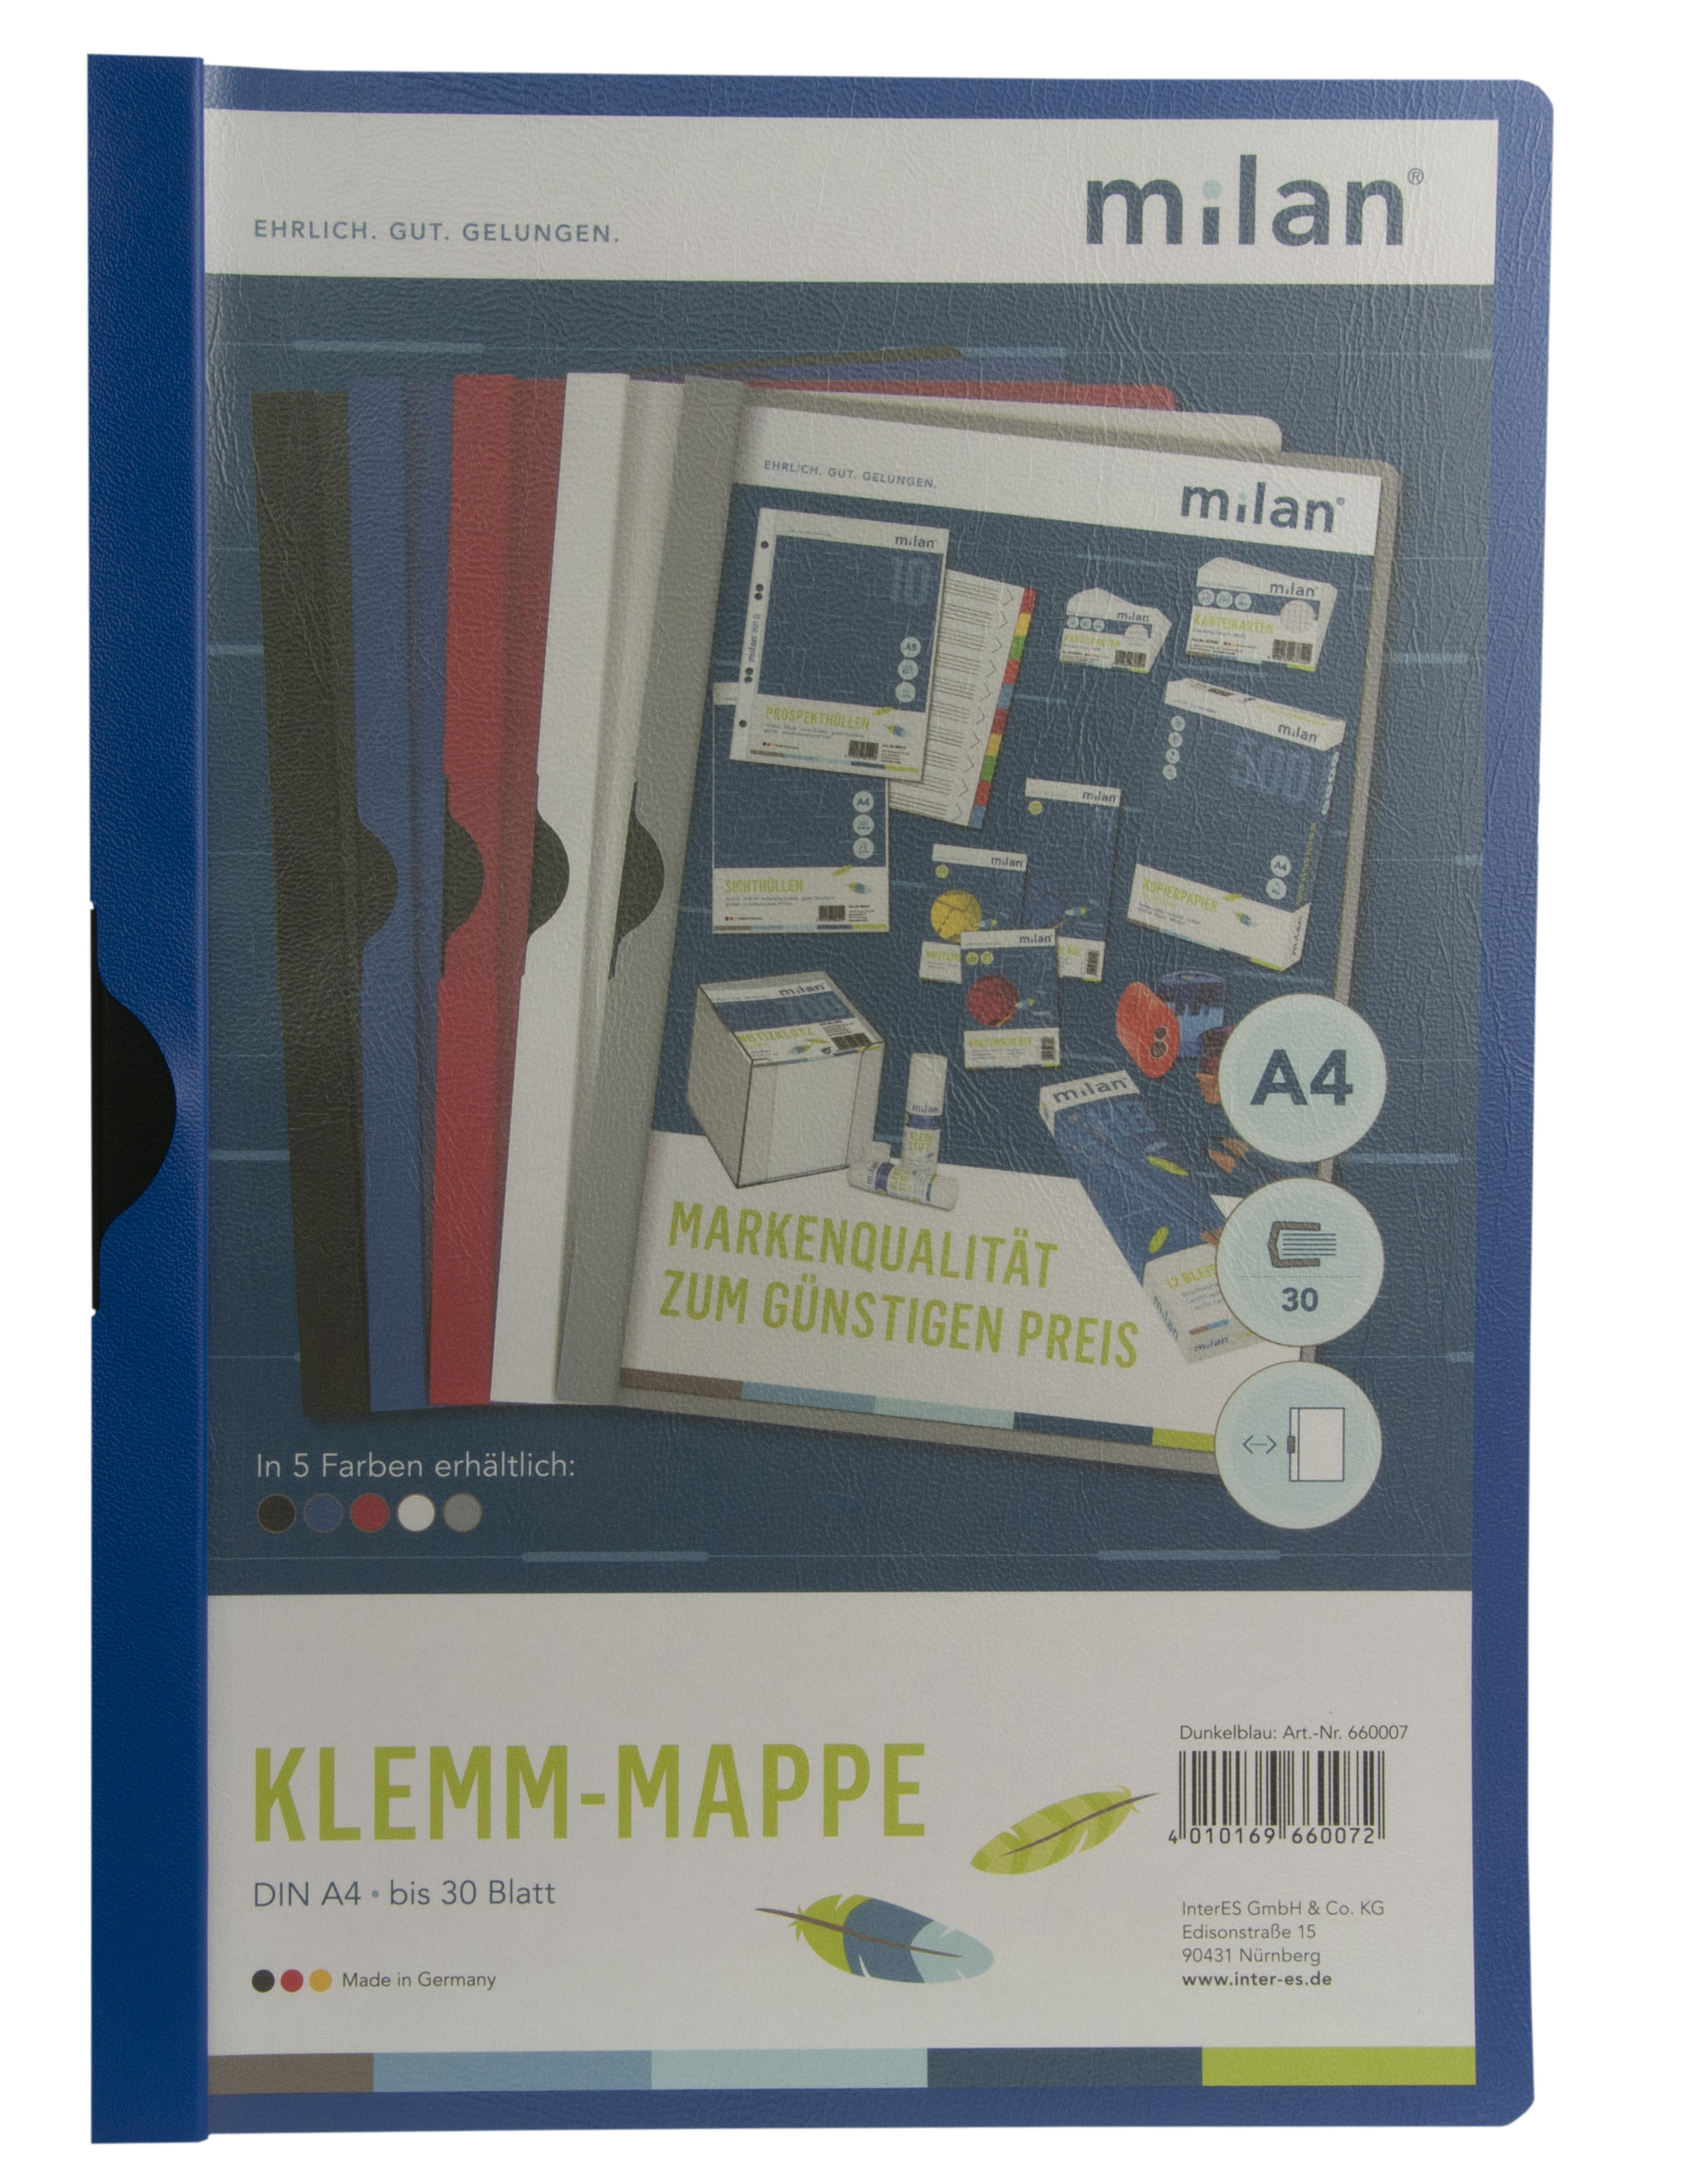 Klemm-Mappe A4 Milan dunkelblau 